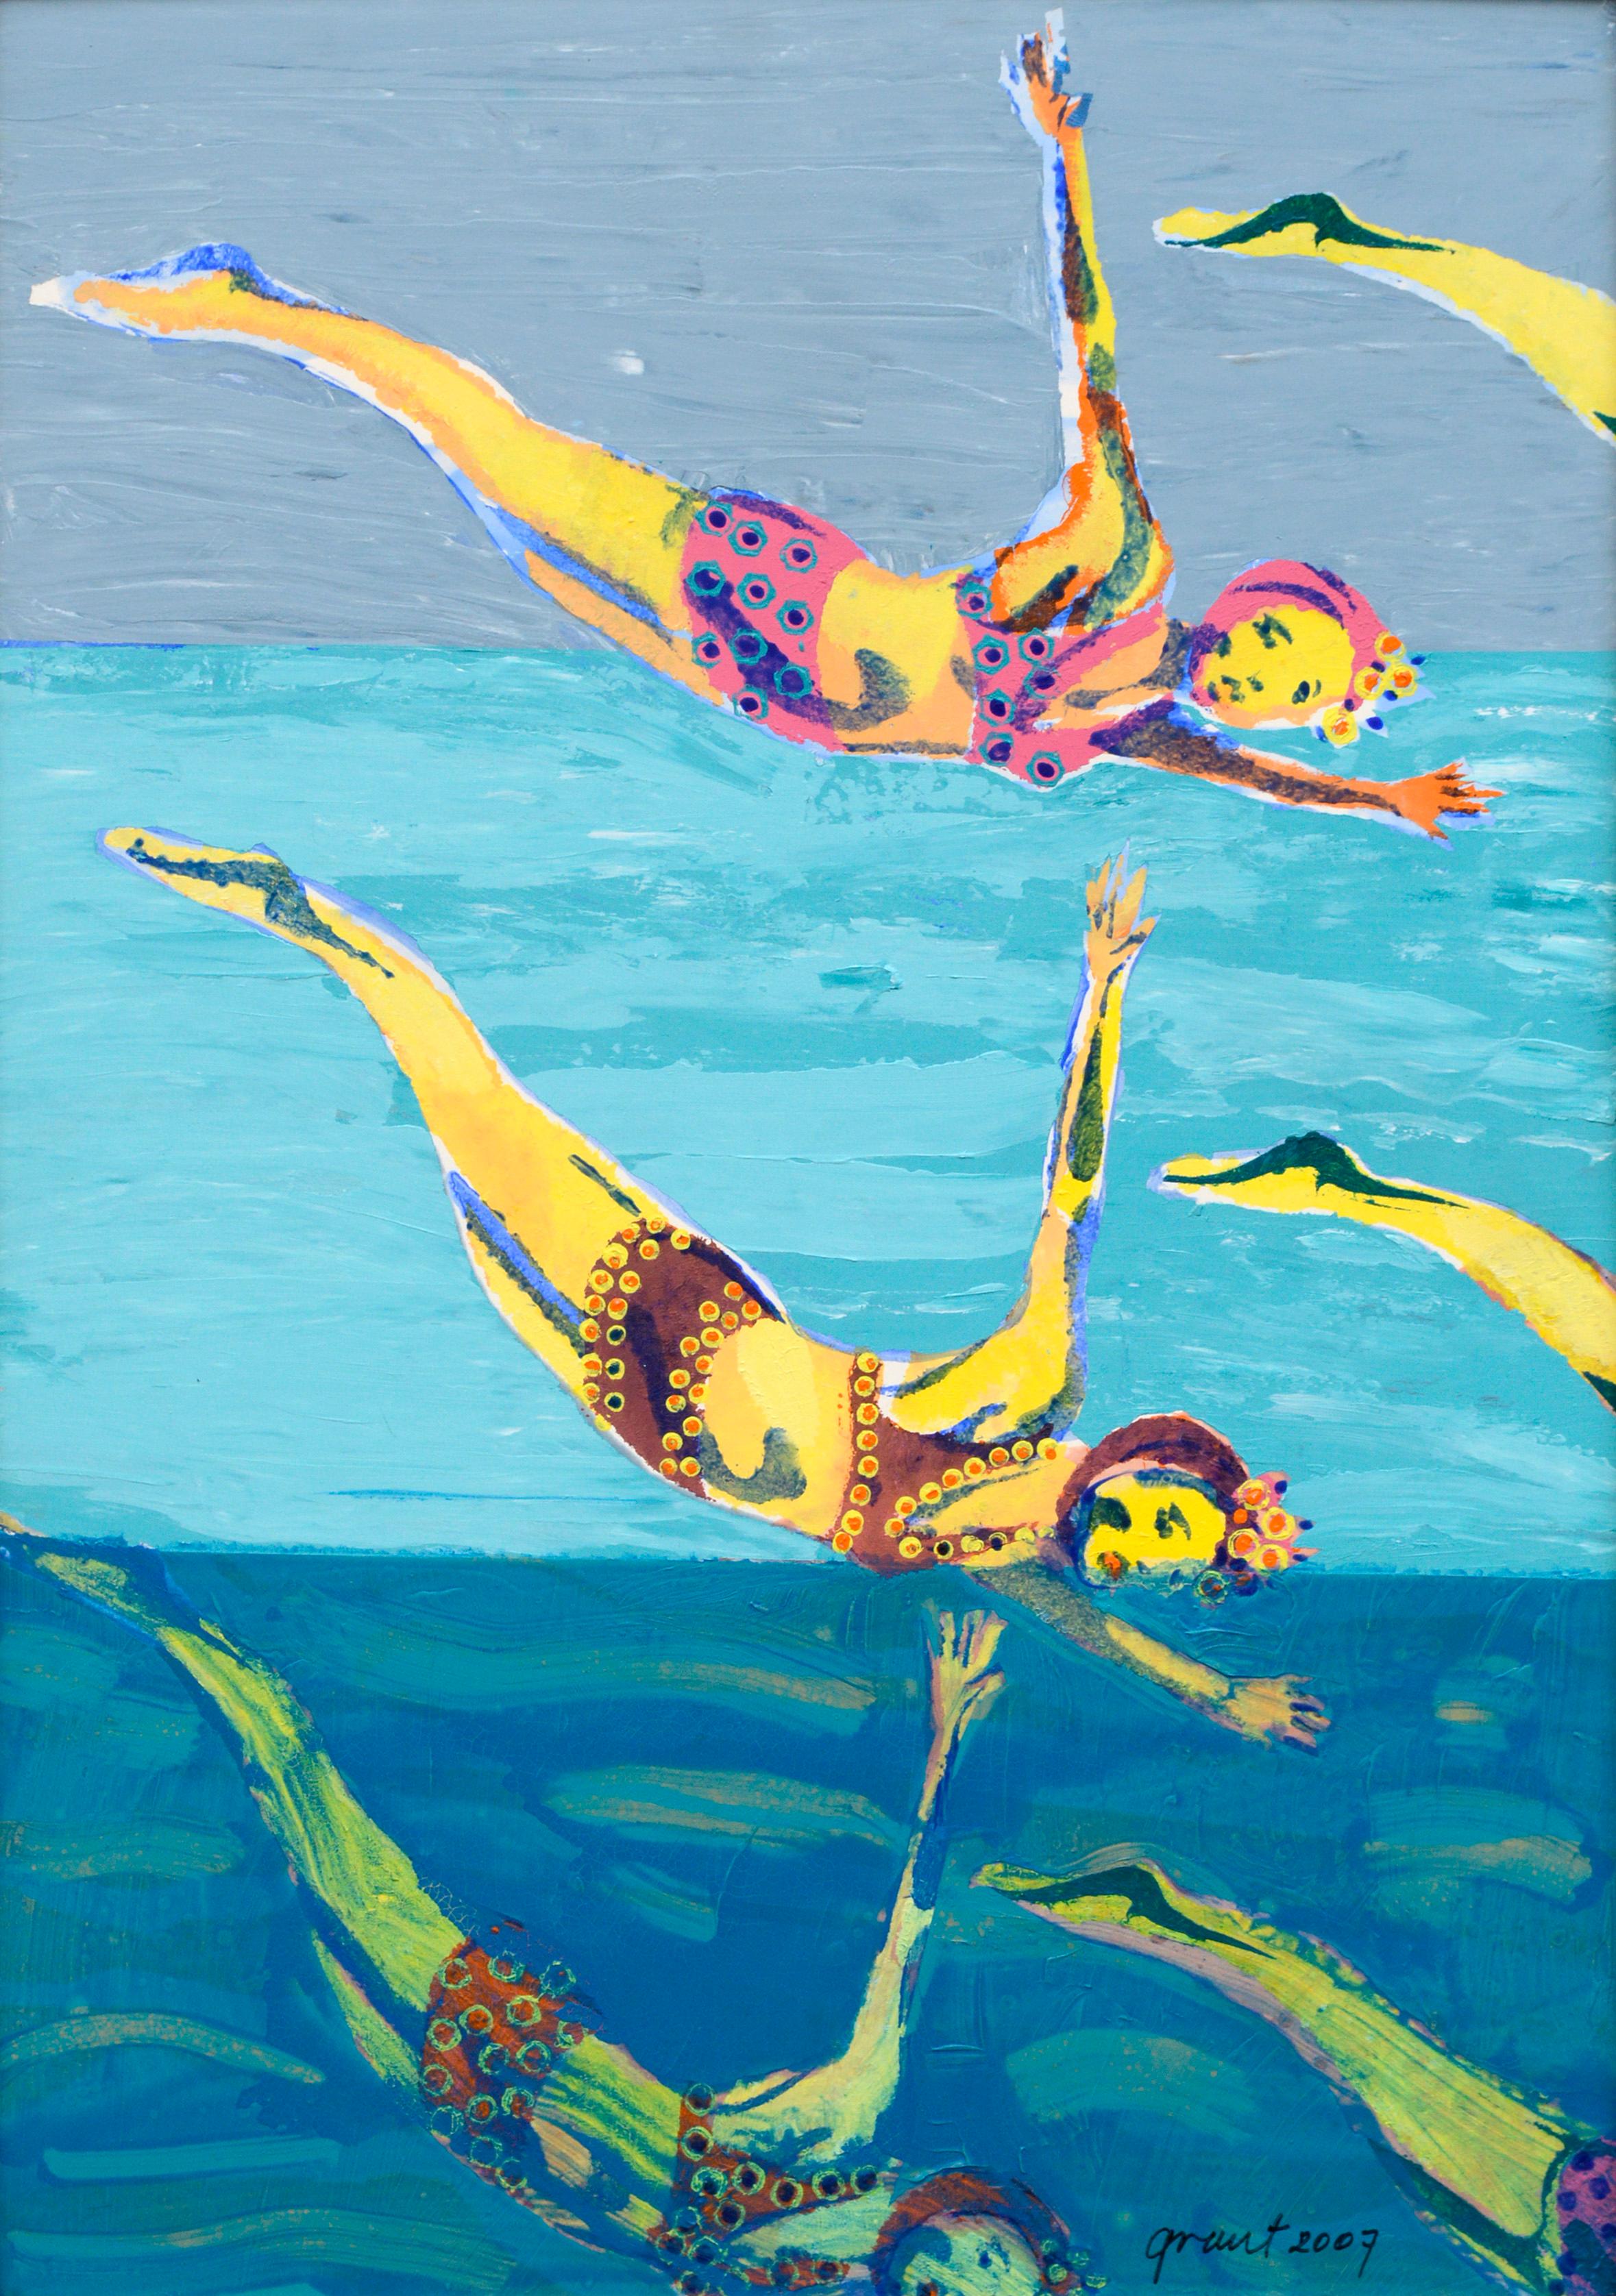 Bunte Swimmers, zeitgenössische figurative Pop-Art in Blau – Painting von Marc Foster Grant